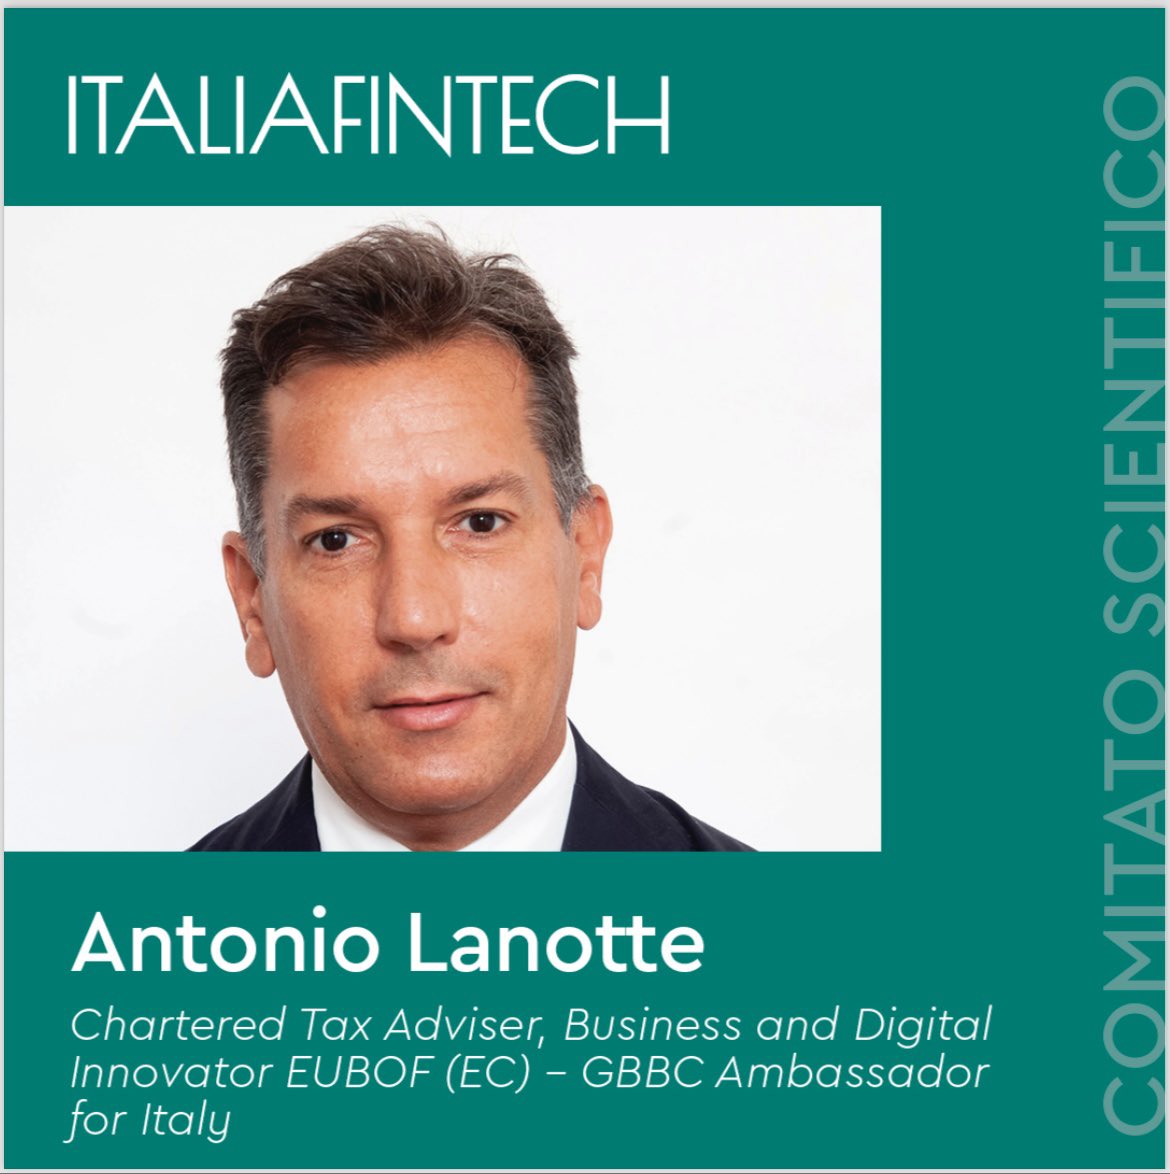 Sono lieto e onorato di fare parte del Comitato Scientifico, composto da esperti di alto profilo, a supporto del Management di @italia_fintech per la #crescita, lo #sviluppo e il #progresso del settore #Fintech in #Italia. 

#Fintech #Digital #Italy #Finance #Technology